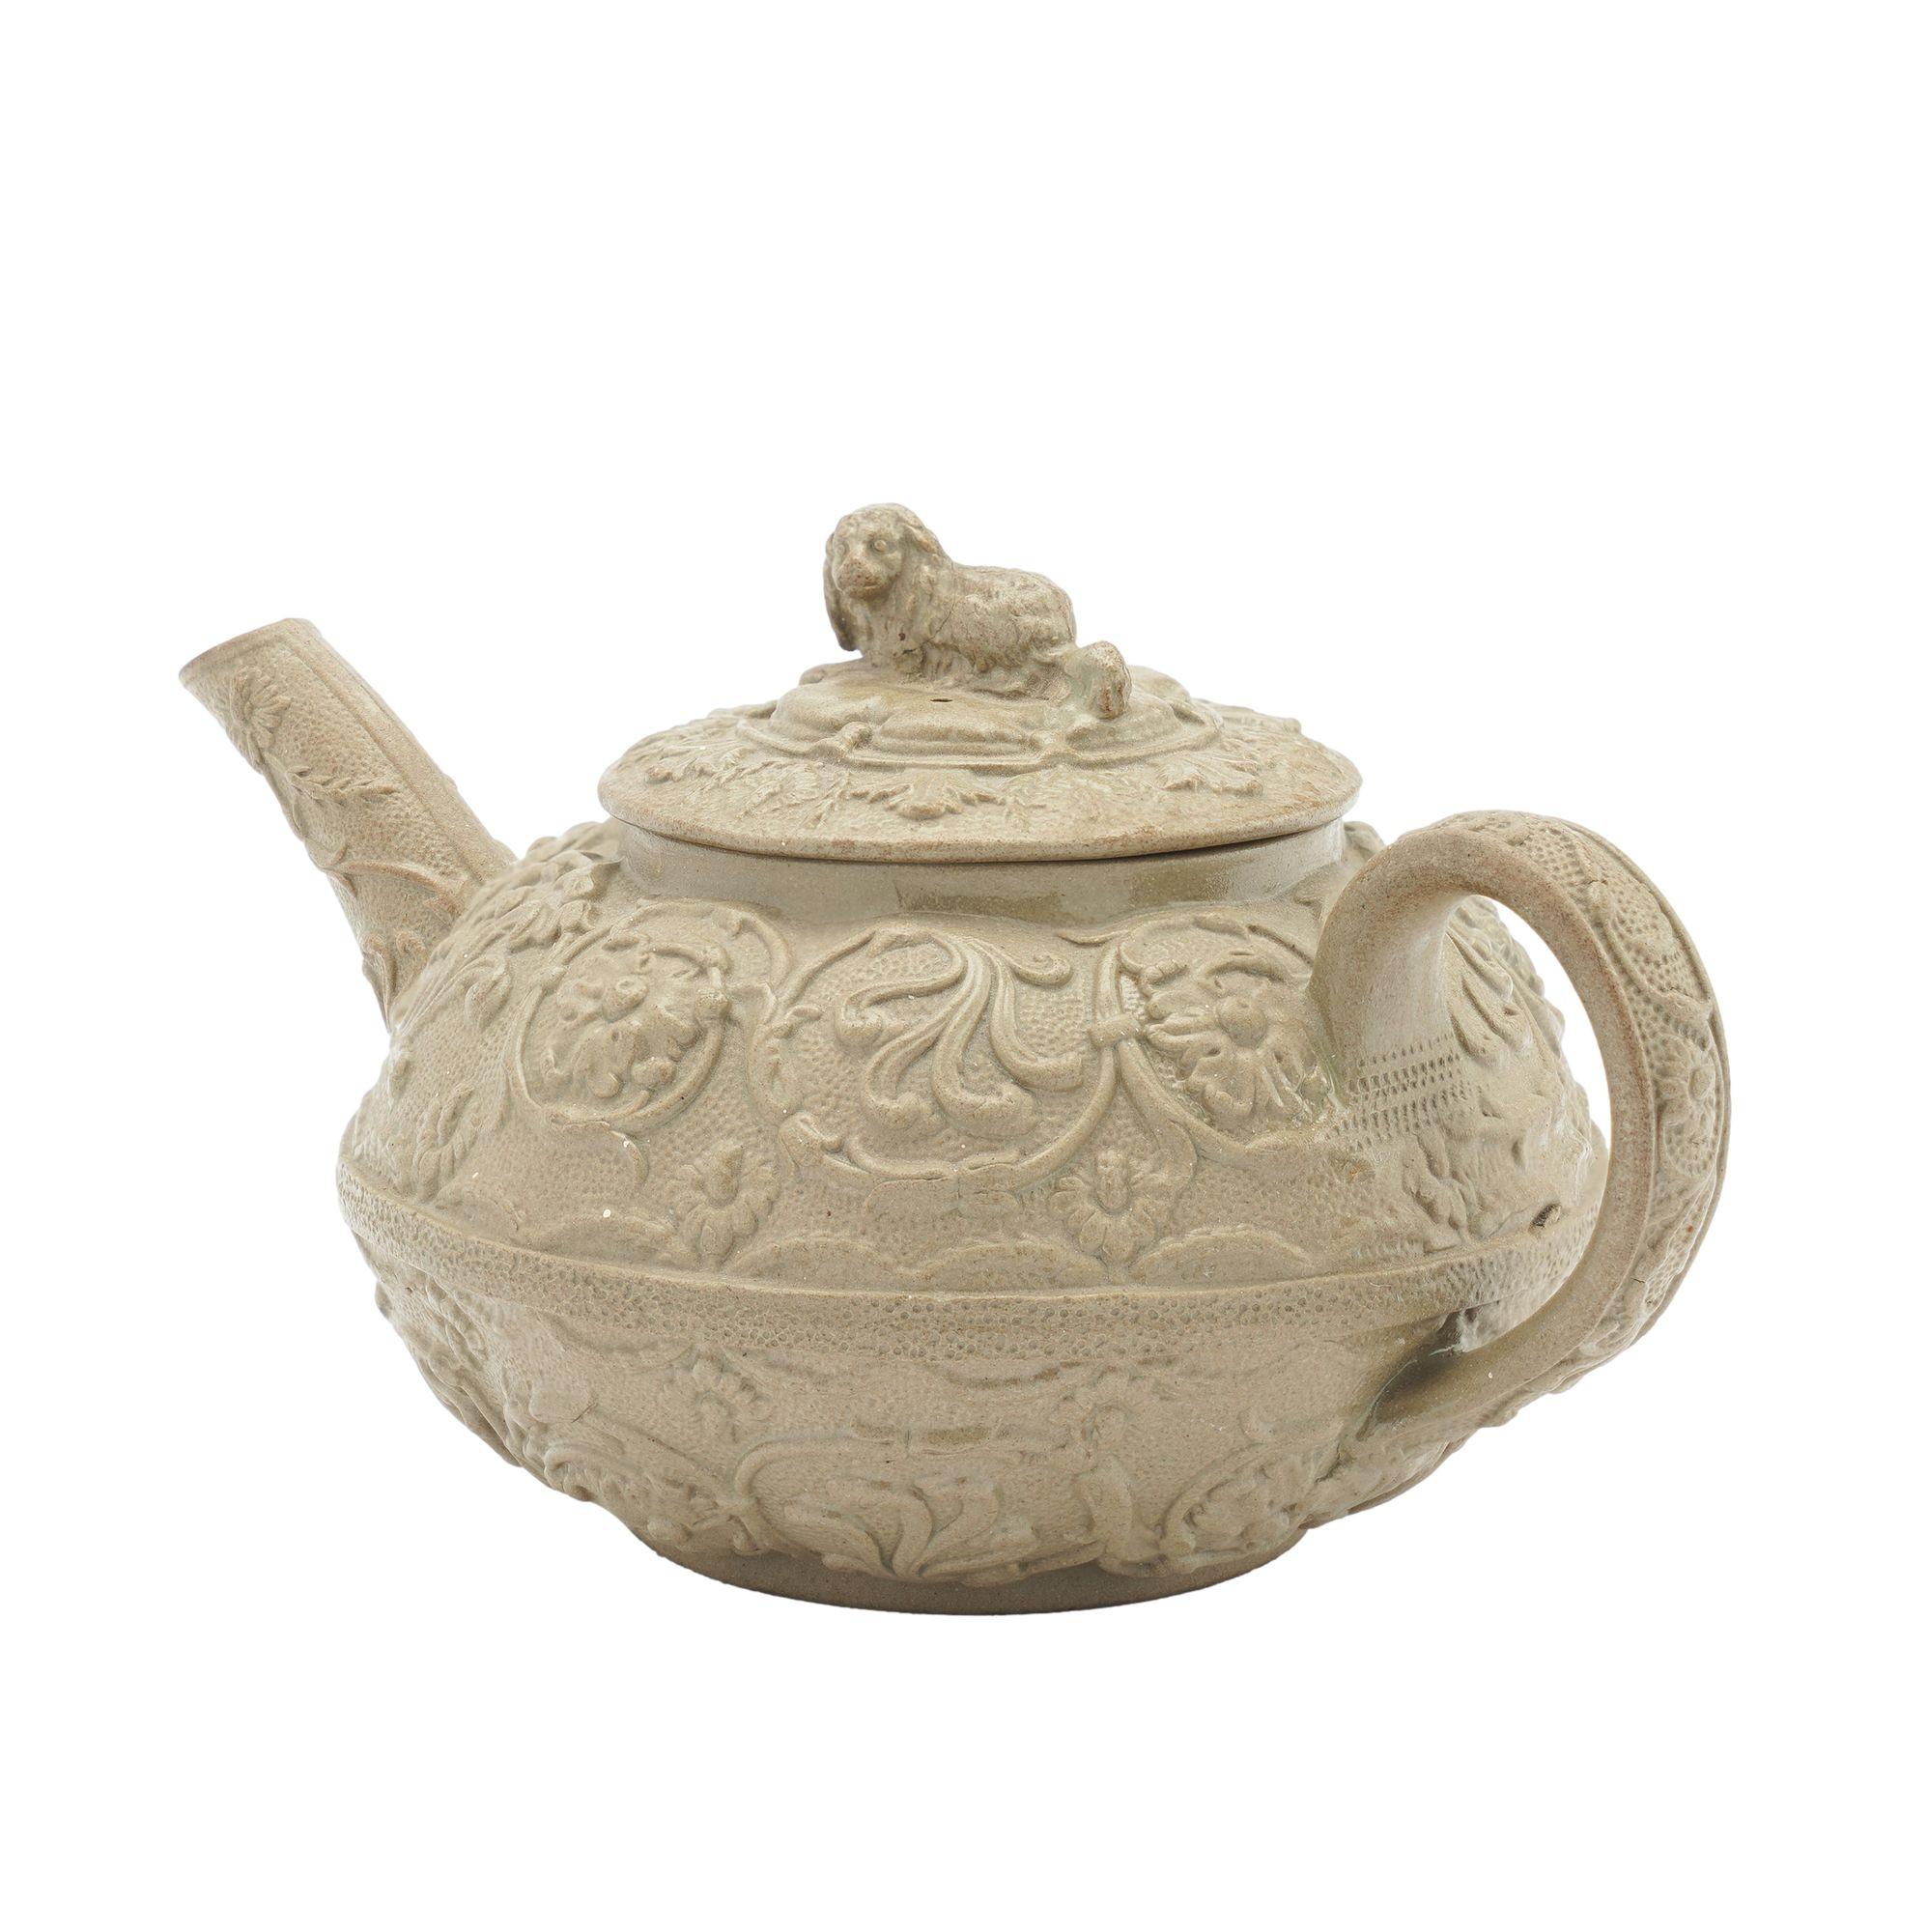 Teekanne aus Steingut in einer kittfarbenen Schlämmglasur. Die Teekanne ist mit einer Spaniel-Finale und schweren Blumenranken aus der Renaissance auf einem geprägten Grund versehen. Gegossen nach der Form von Wedgwood & Bentley von 1775, die nach